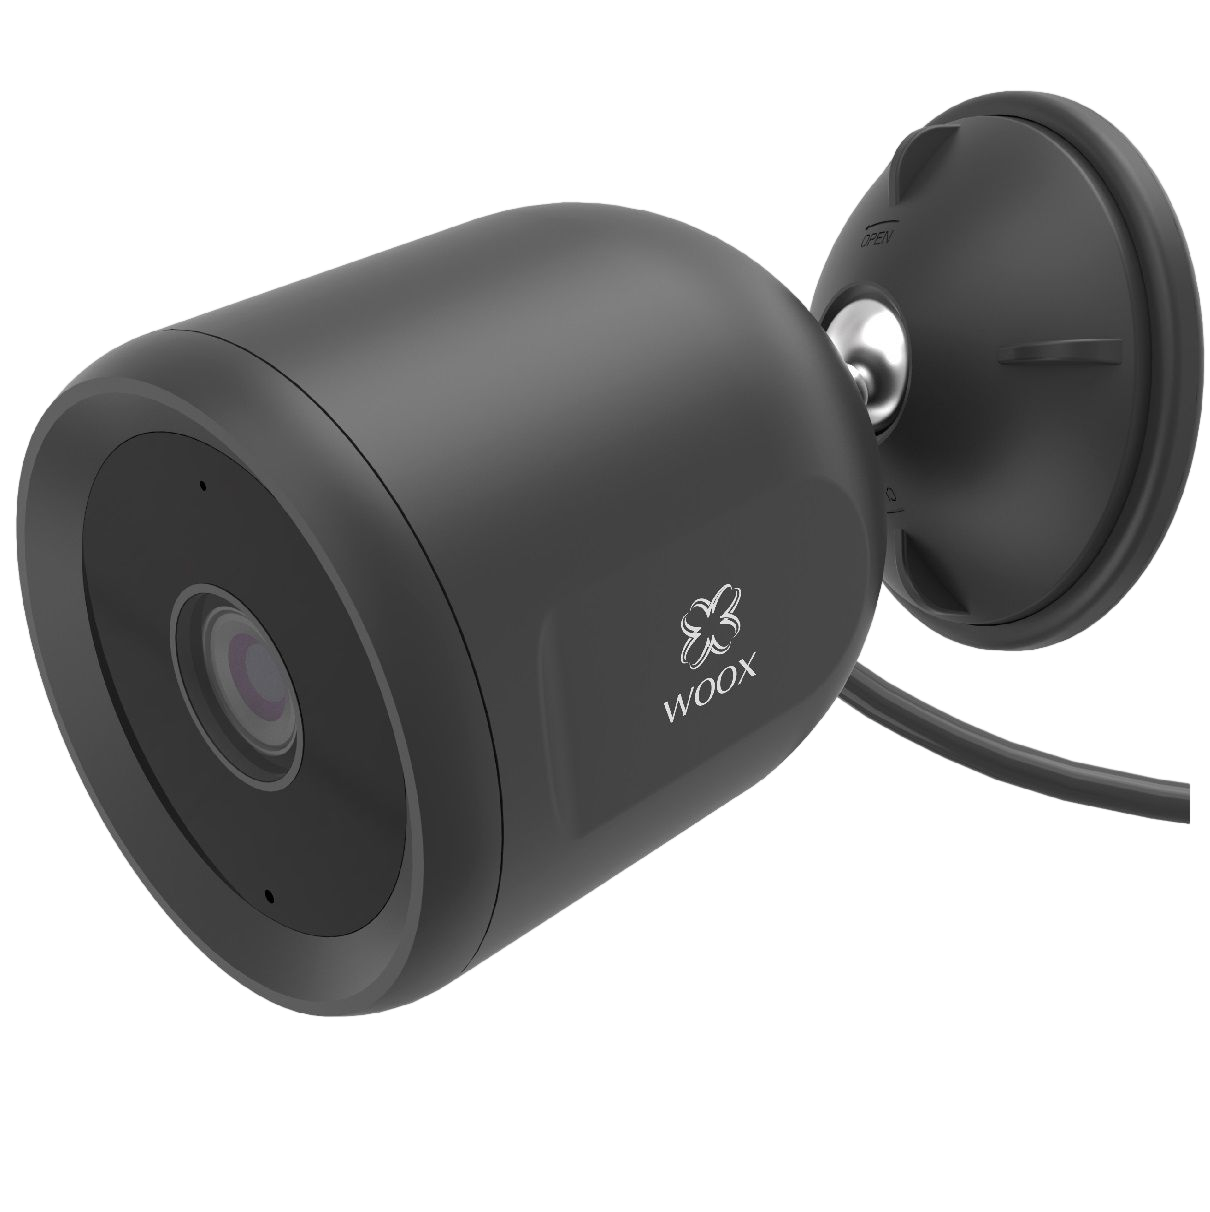 WOOX 1080p verdrahtete Außen-Sicherheitskamera verdrahtete R9044 1080p Außen-Sicherheitskamera - - R9044